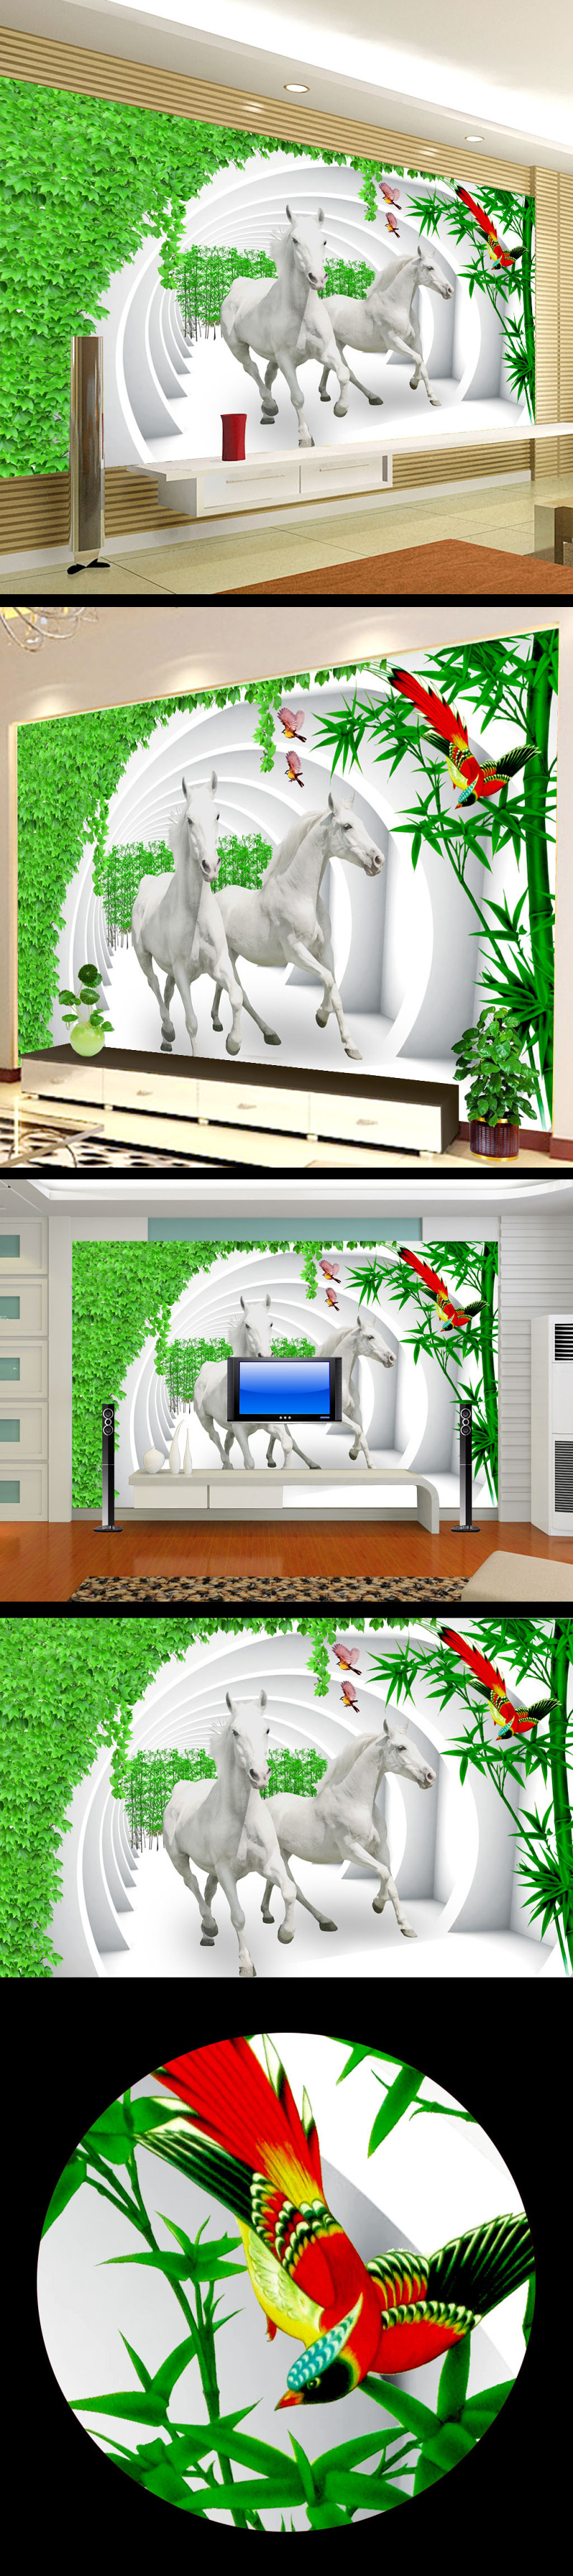 骏马3D立体电视背景墙设计